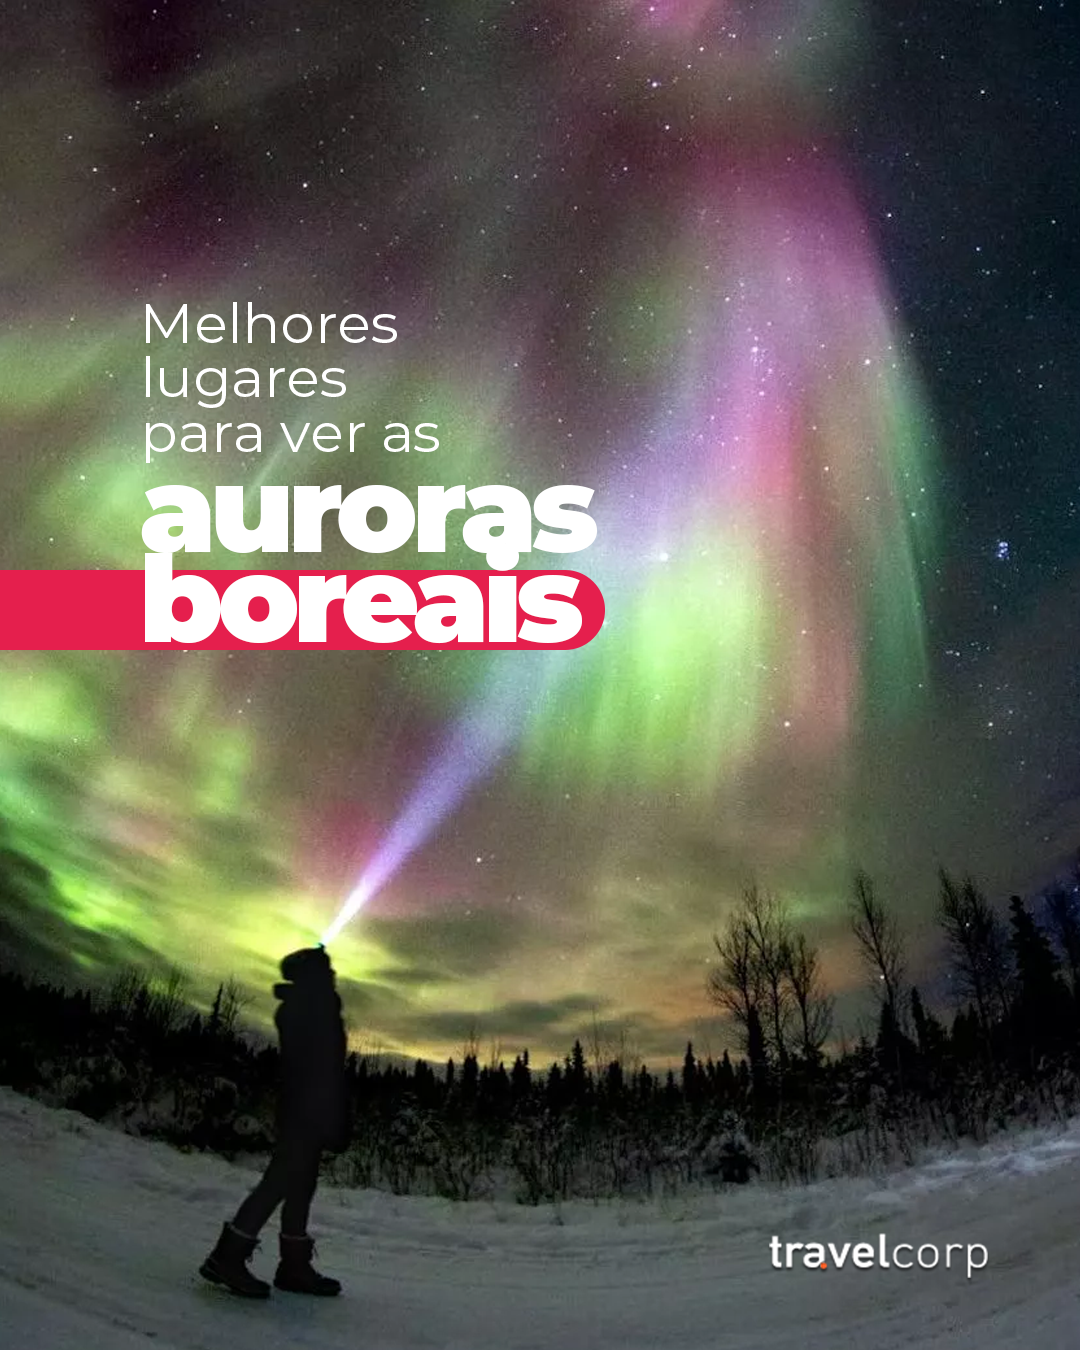 Melhores lugares para ver auroras boreais - TravelCorp